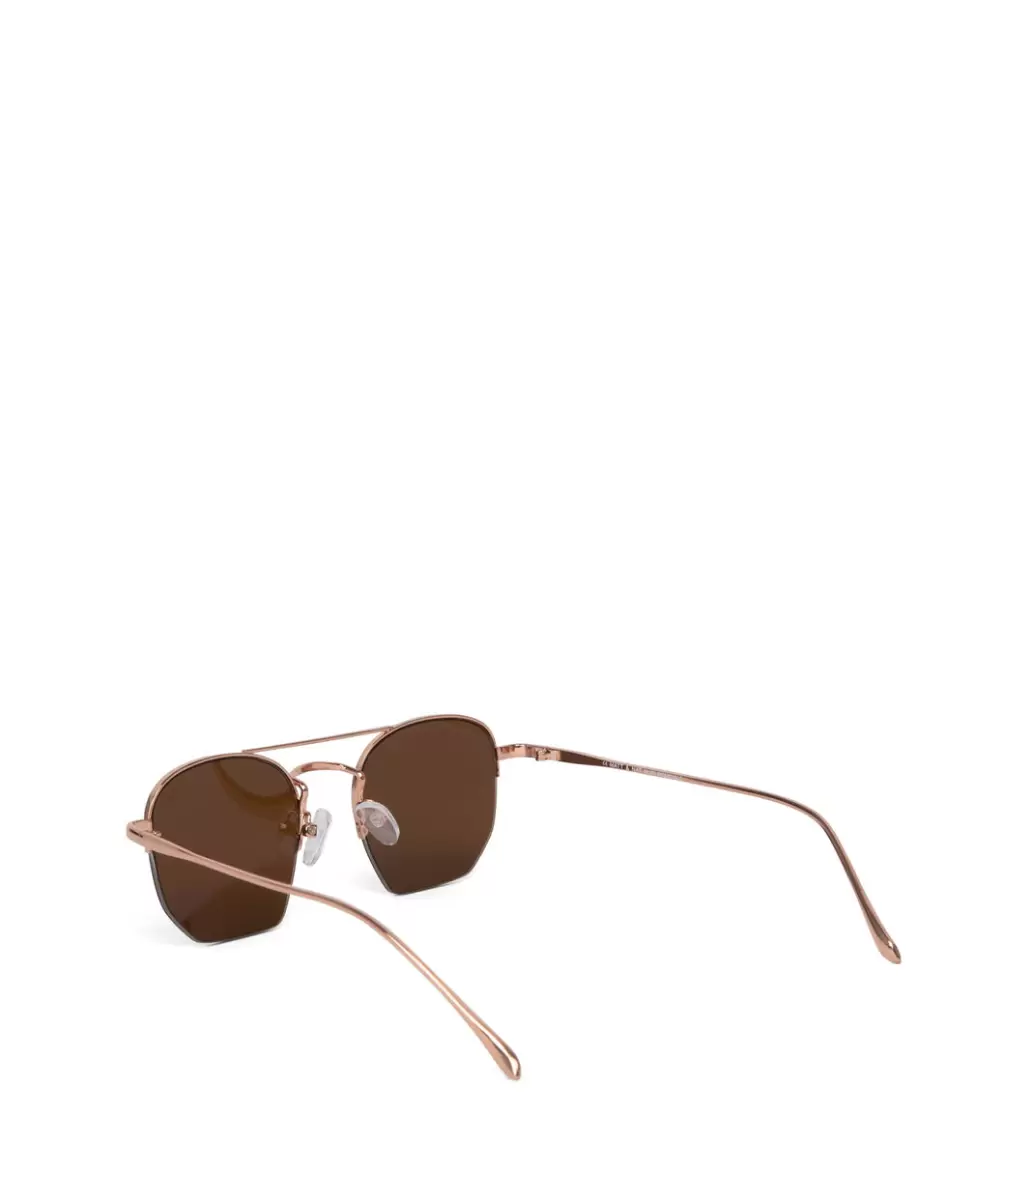 Rgobro Exclusive Offer Sunglasses Women Sarai Aviator Sunglasses Matt & Nat - 3